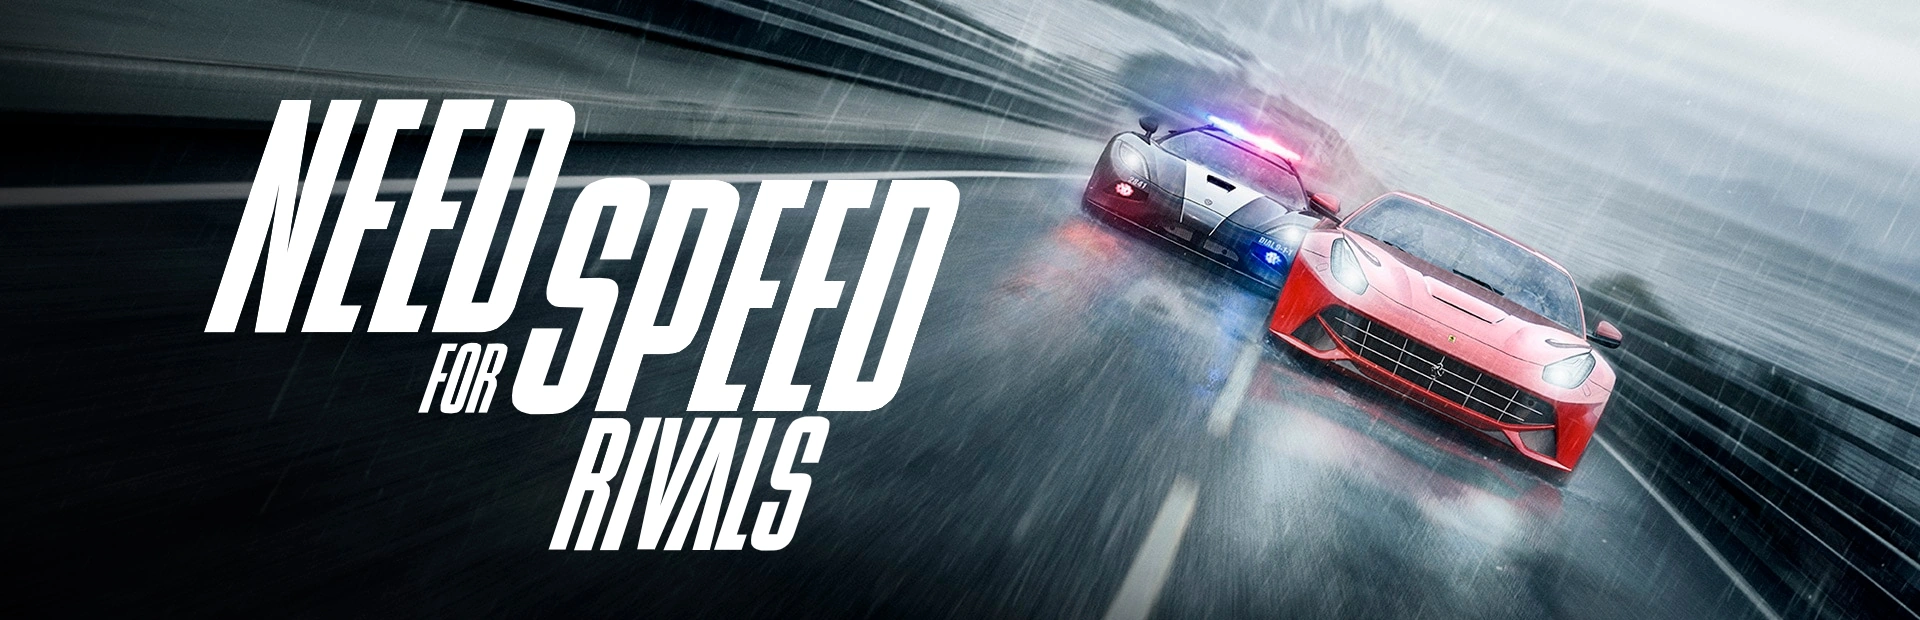 دانلود بازی Need For Speed Rivals برای کامپیوتر | گیمباتو